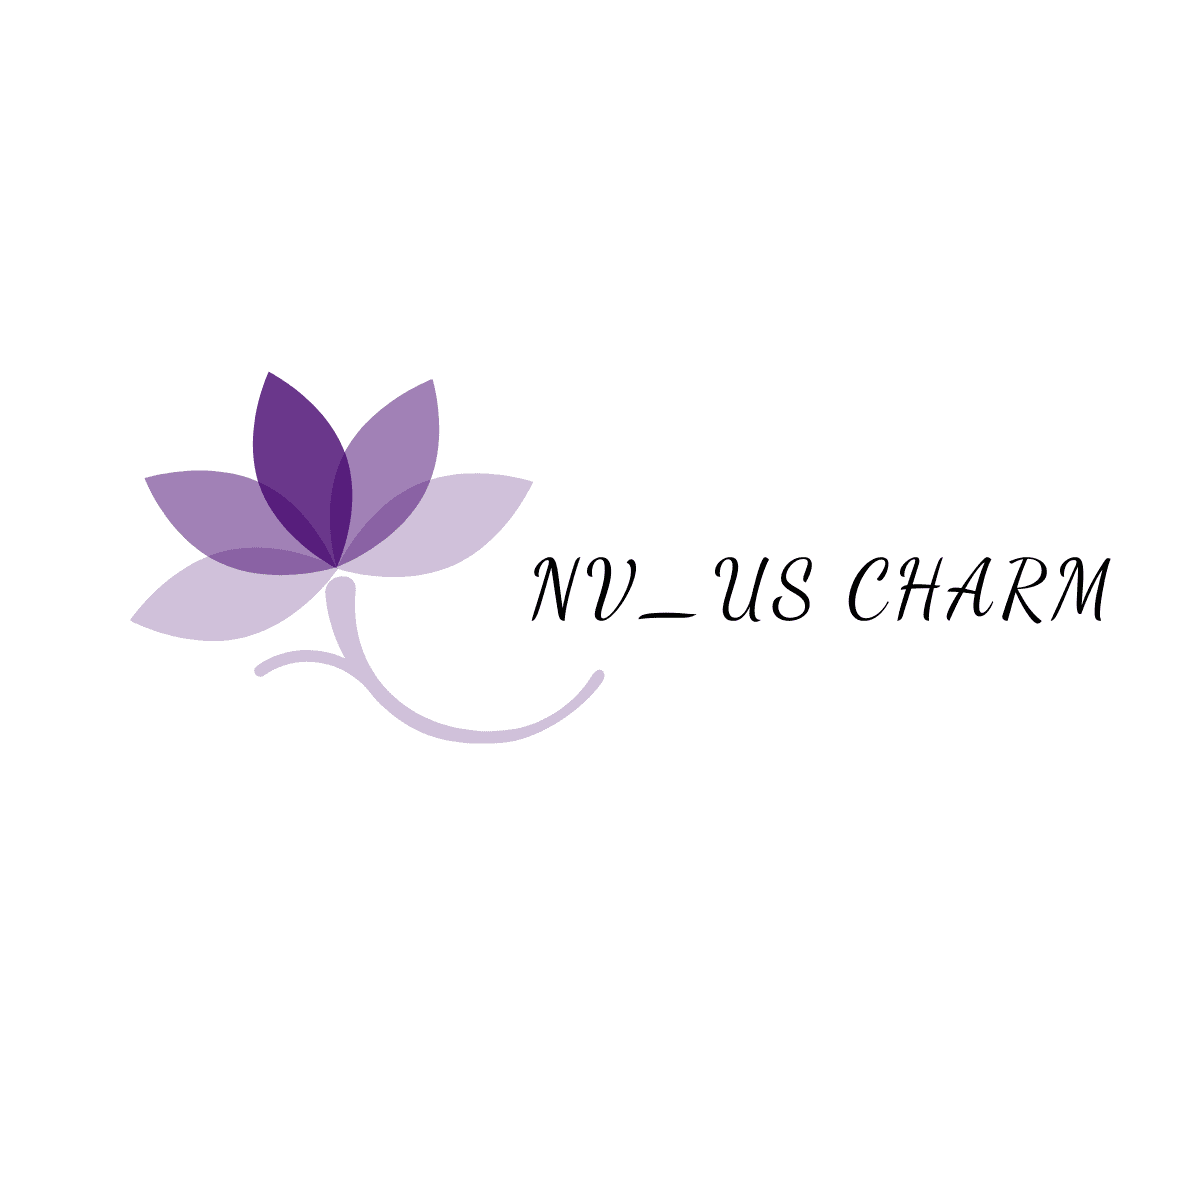 NV_US Charm